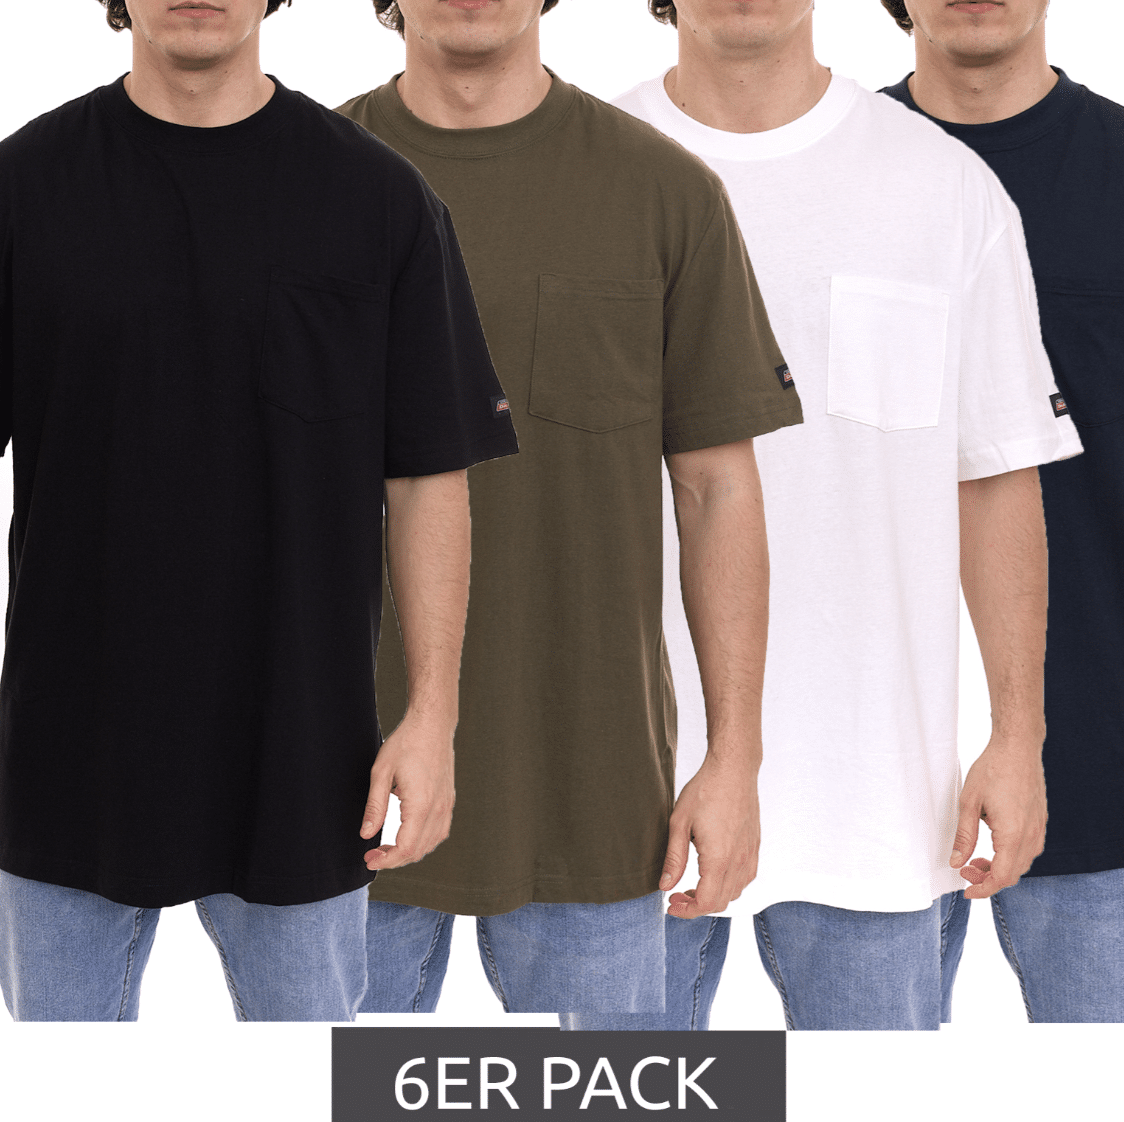 Thumbnail letzten Größen: schnell sein! 👕 nur 3,33€ pro Shirt ✔️ Dickies Basic Herren T-Shirts 6er Pack für 19,99€ (statt 50€) 🎉